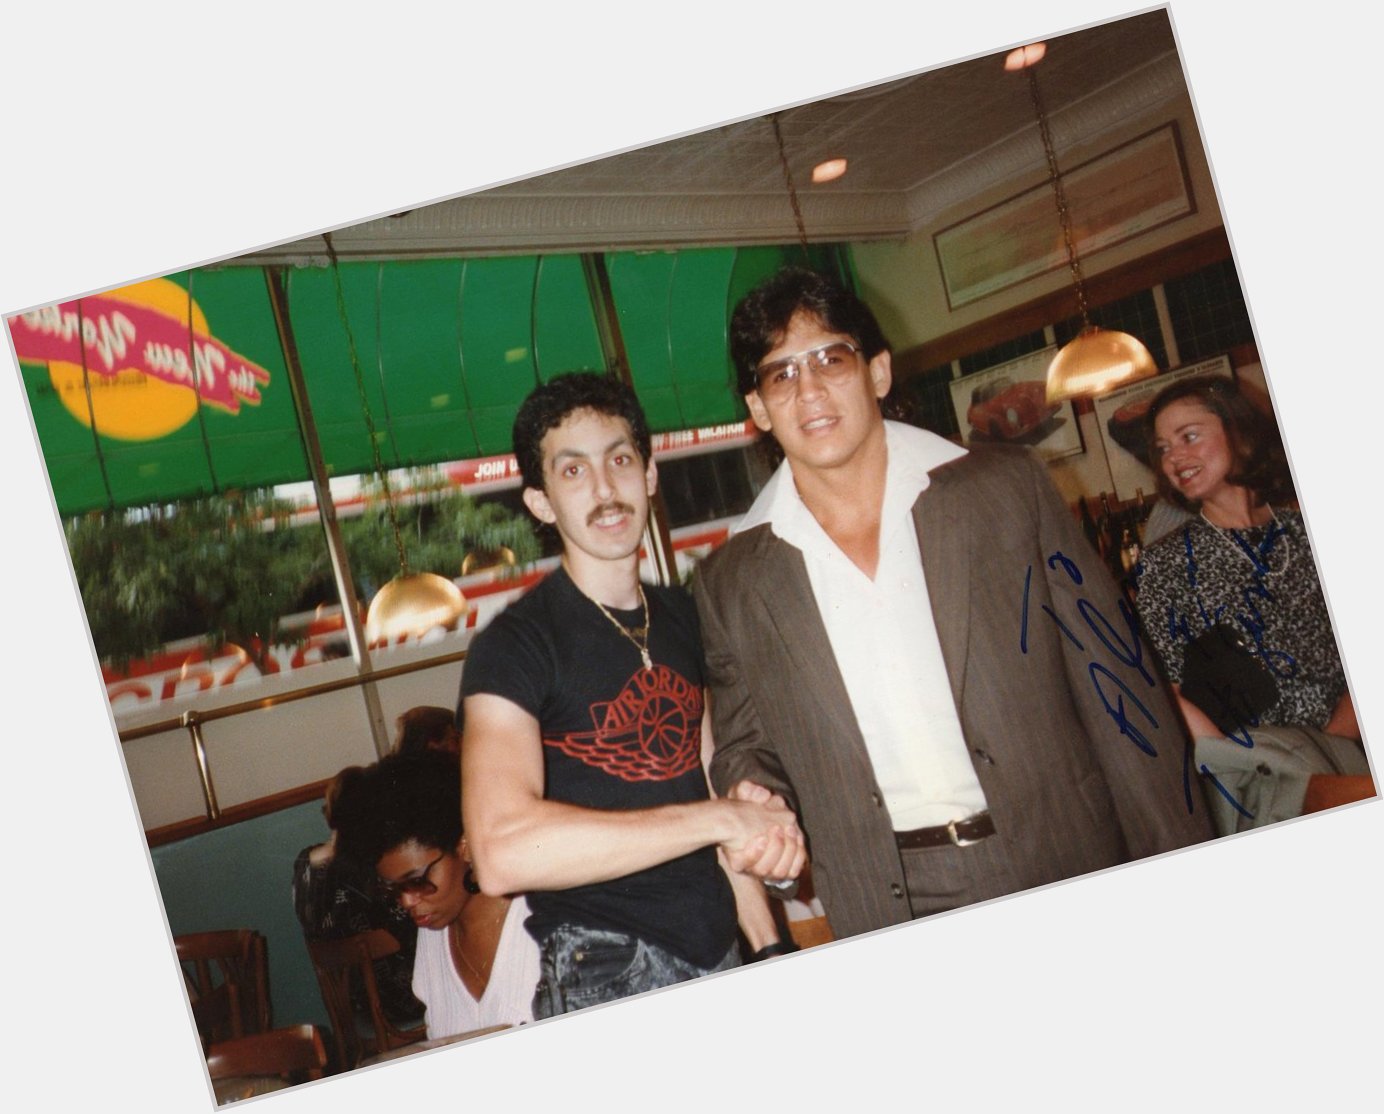  Happy Birthday to Tito Santana!! 1986 throwback pic of us. 